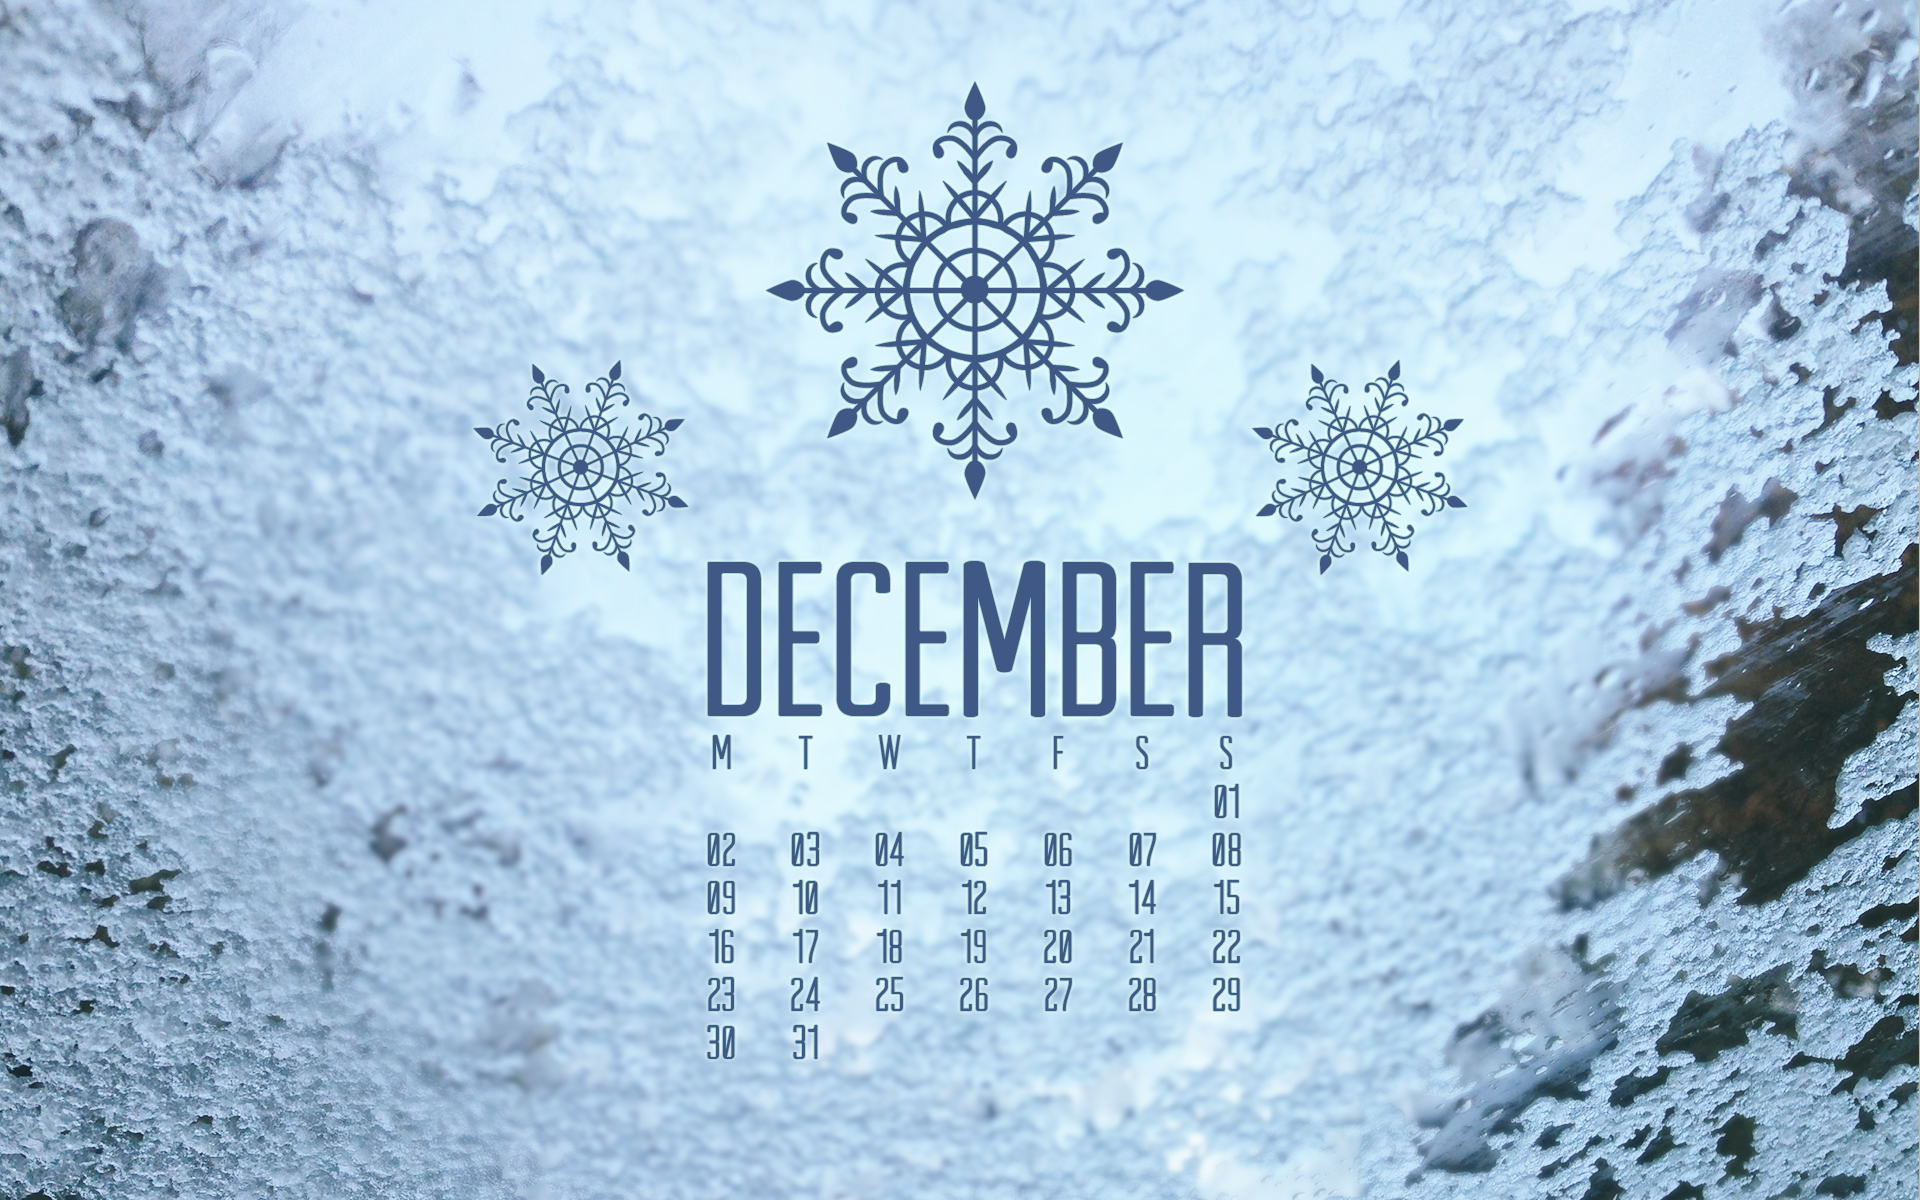 december wallpaper hd,text,font,winter,frost,freezing